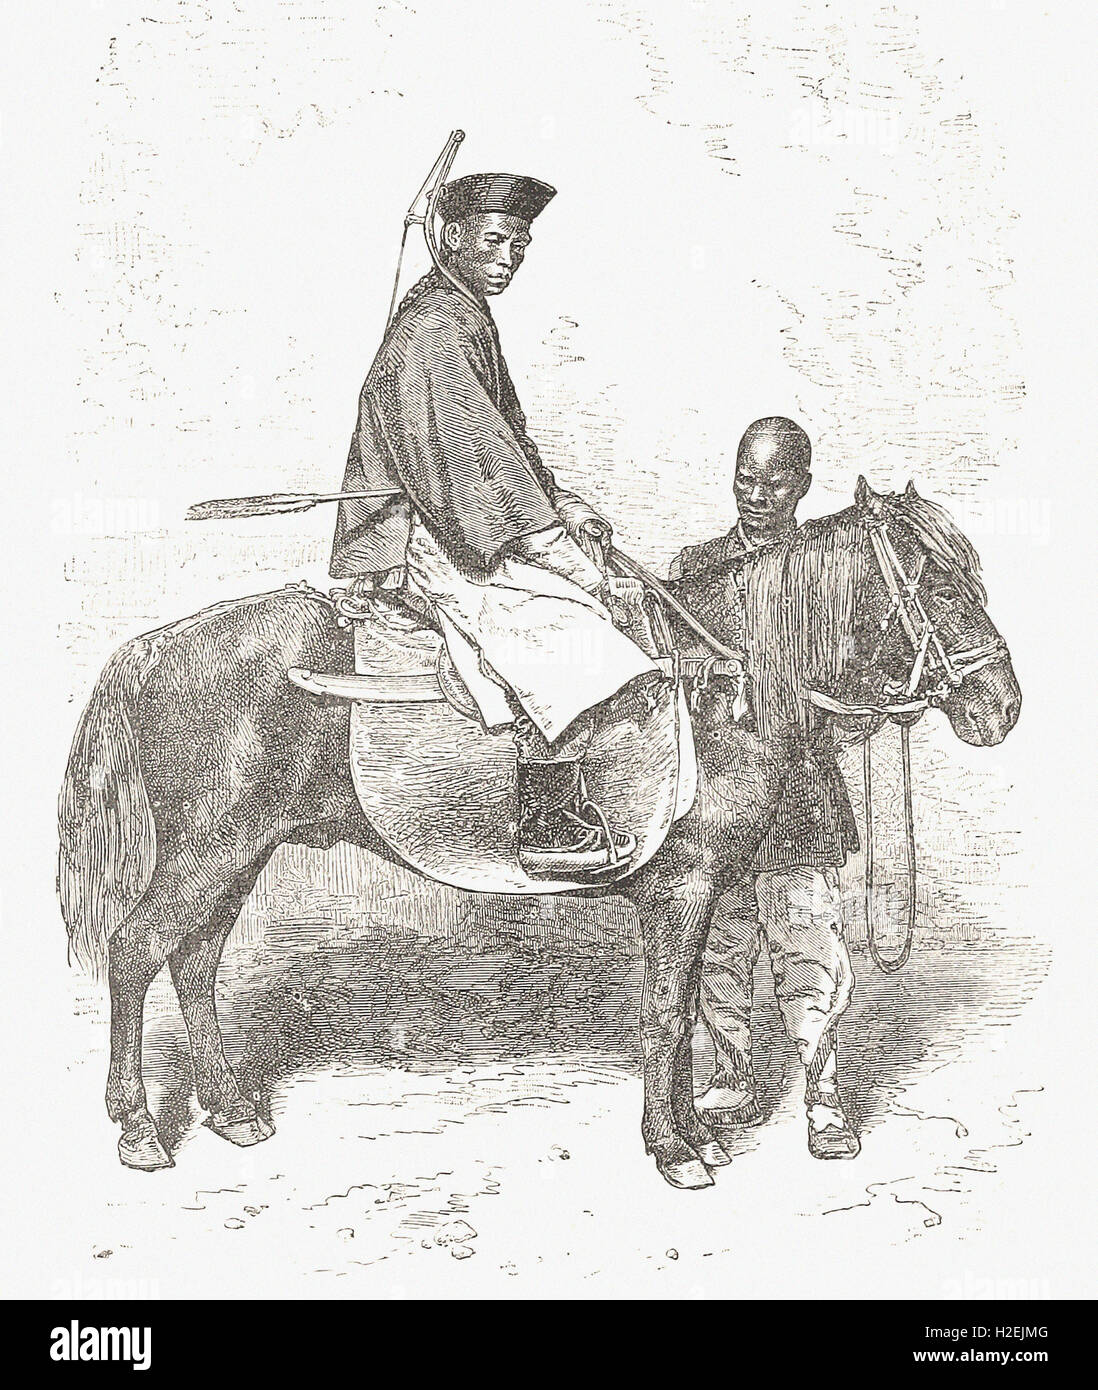 Le tartre - Soldat cheval de 'Cassell's Illustrated Histoire universelle" - 1882 Banque D'Images